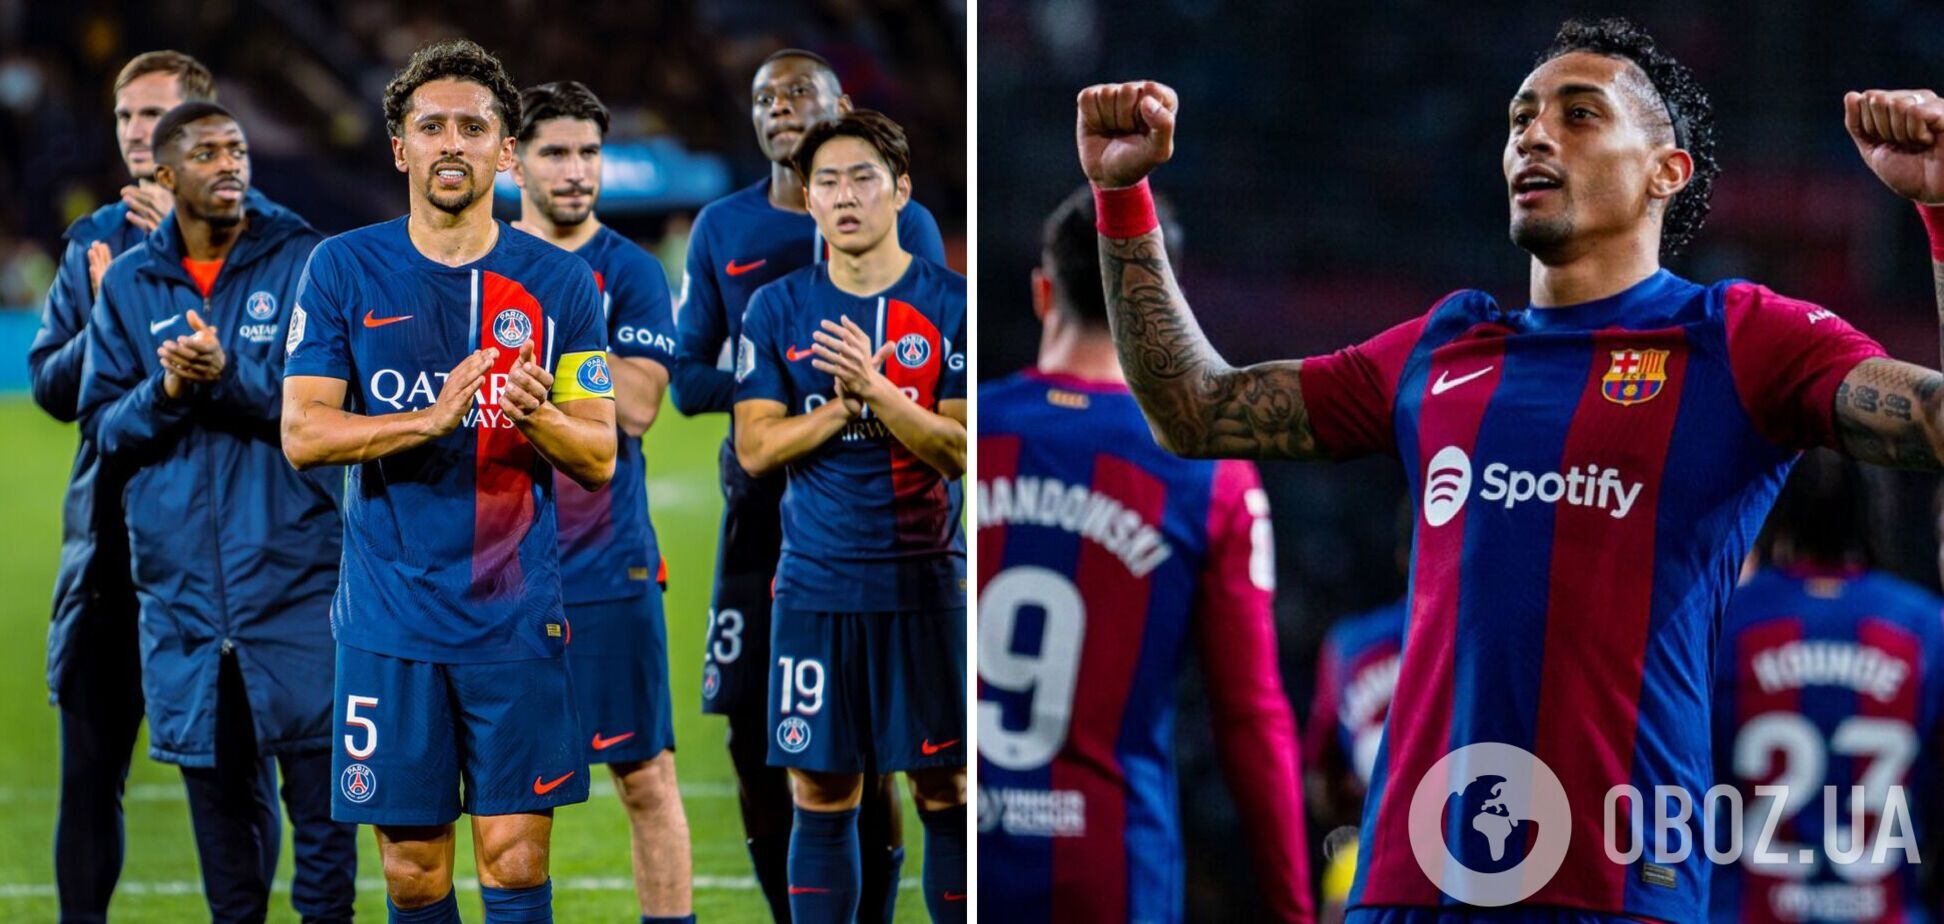 ПСЖ – 'Барселона': хроника и результат четвертьфинала Лиги чемпионов с пятью голами